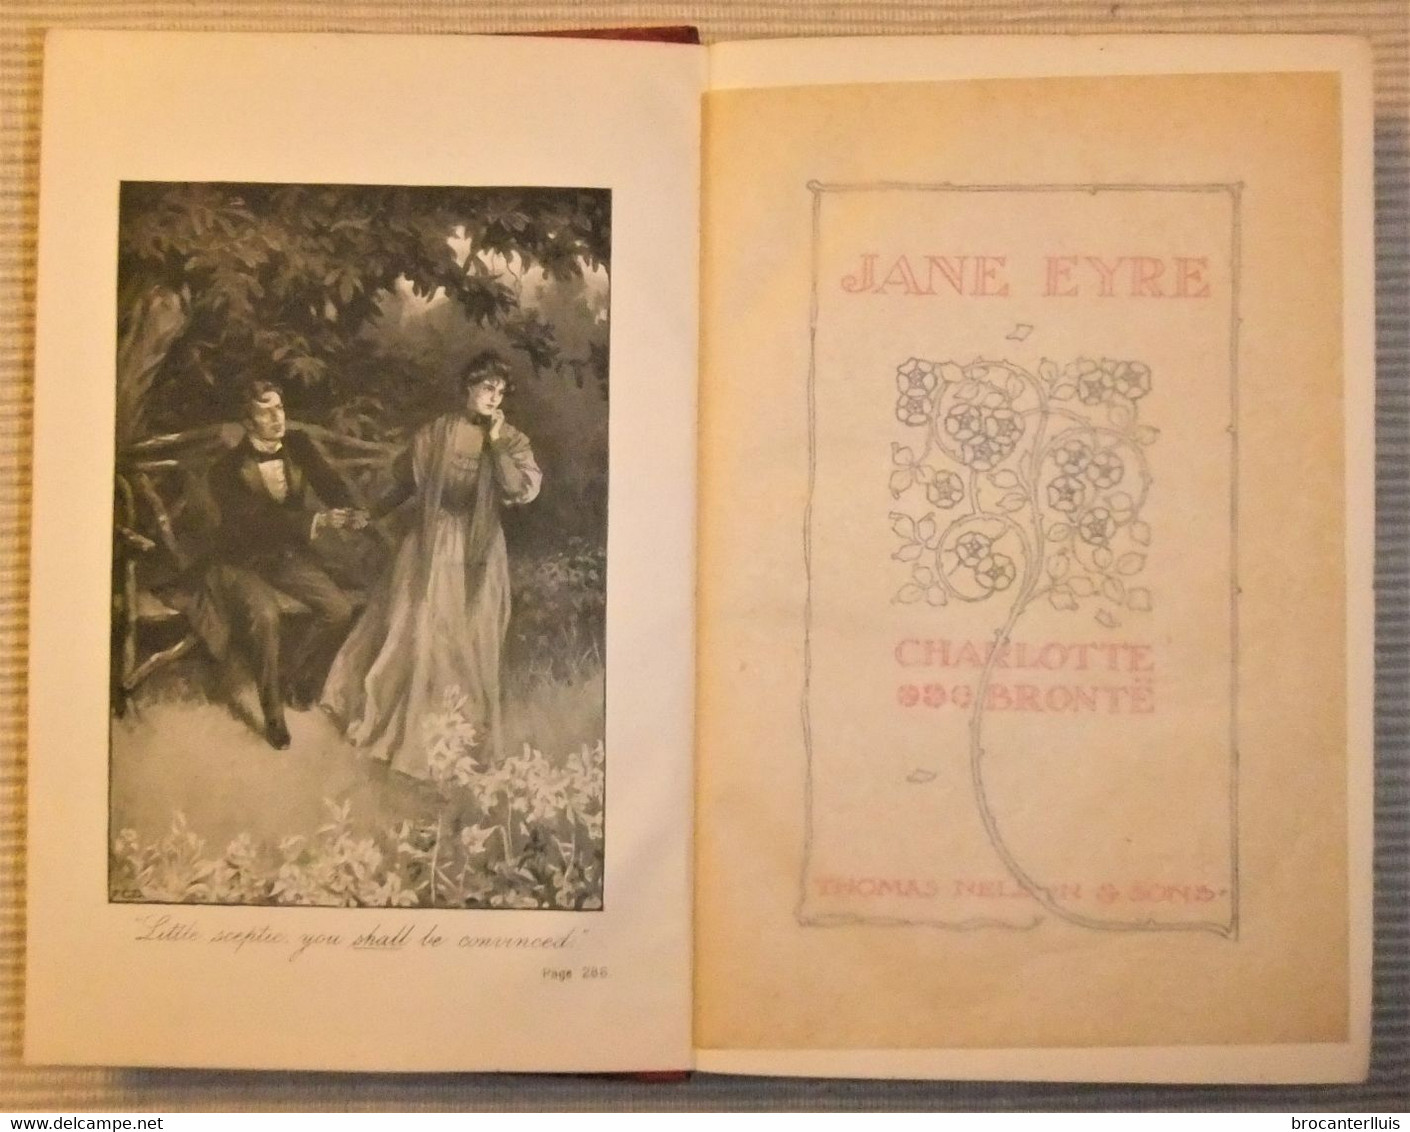 JANE EYRE De CHARLOTTE BRONTË ED. 1902 THOMAS NELSON & SONS - Auto-Biographie